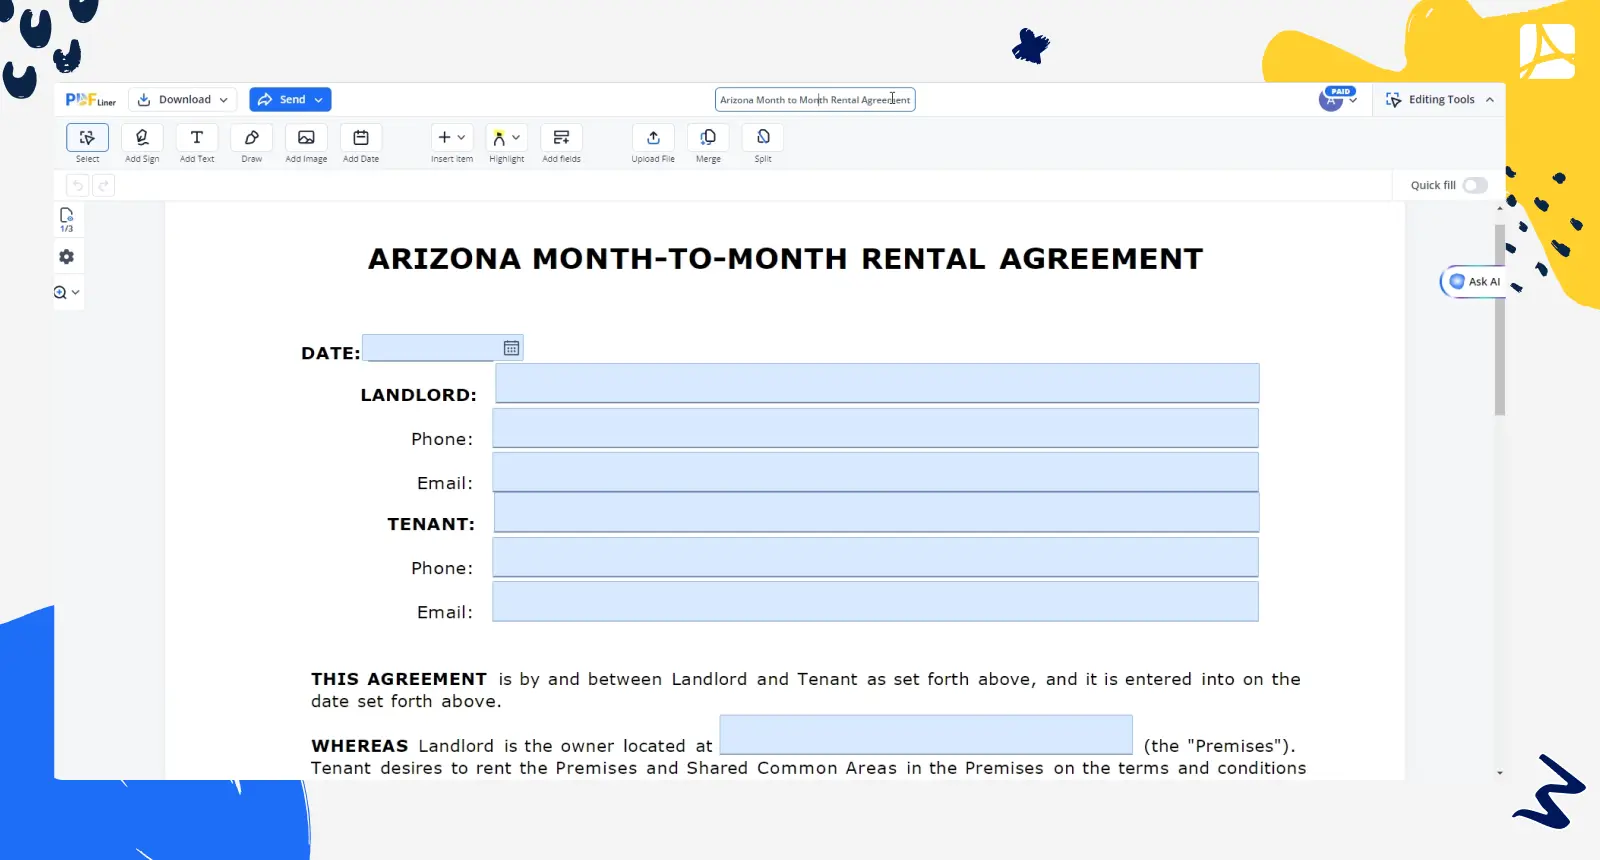 Arizona Month to Month Rental Agreement PDFLiner screenshot